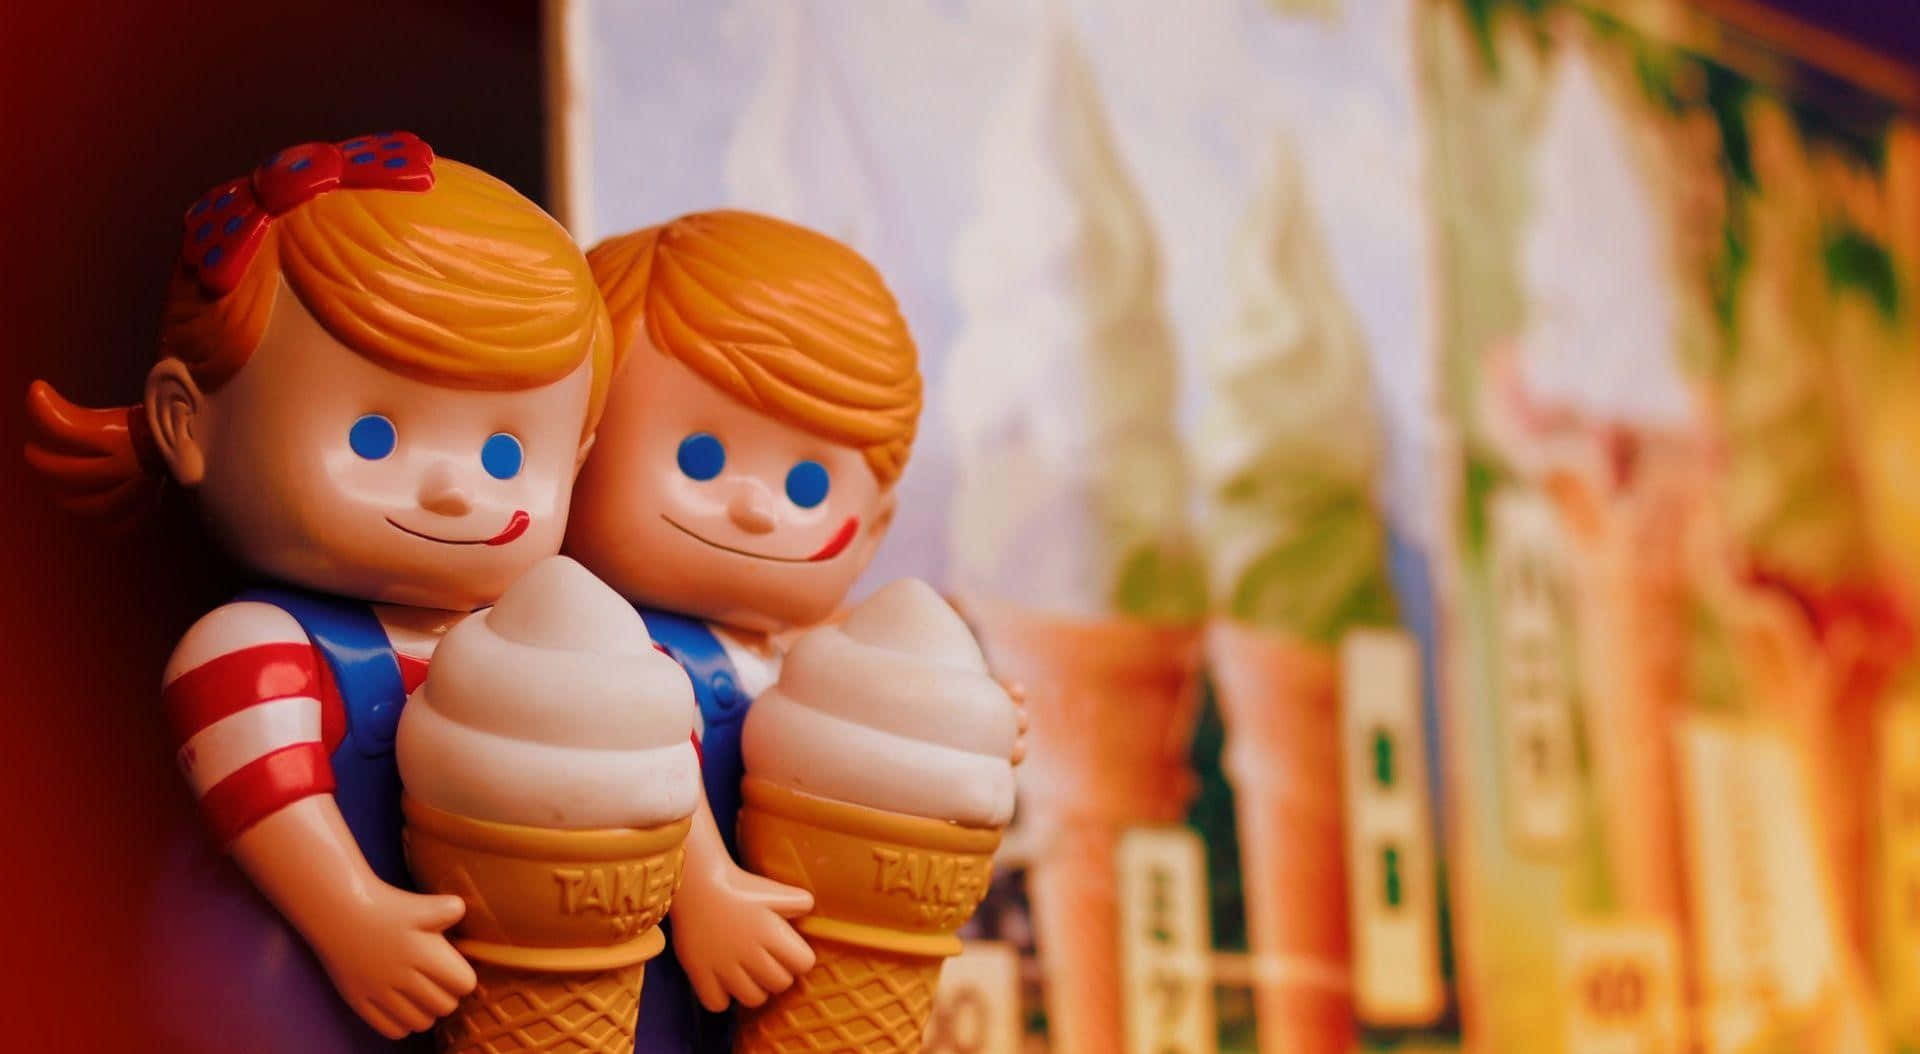 Ice Cream Couple Toy Figurines Wallpaper